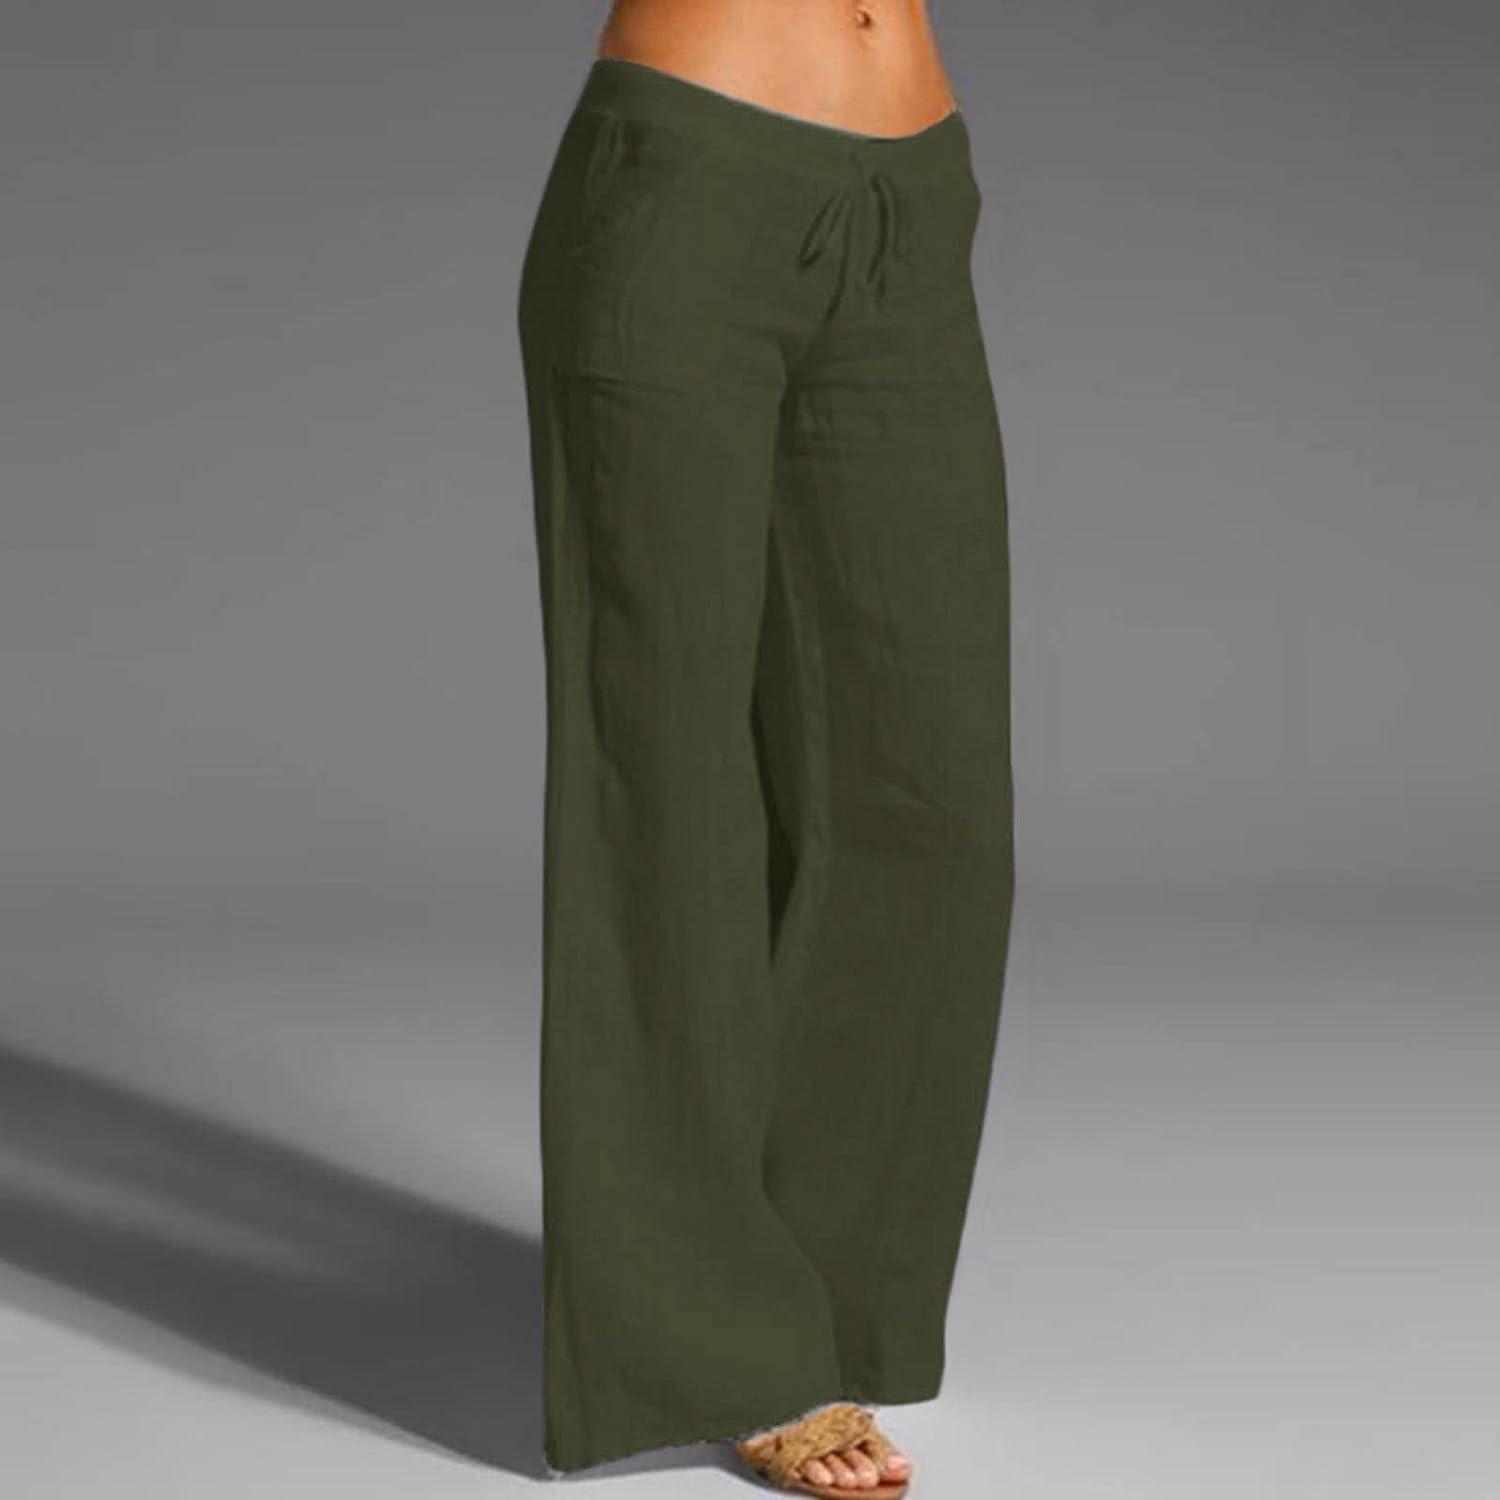 DAZLOR Linen Pants for Women Petite to Plus Size High Waist